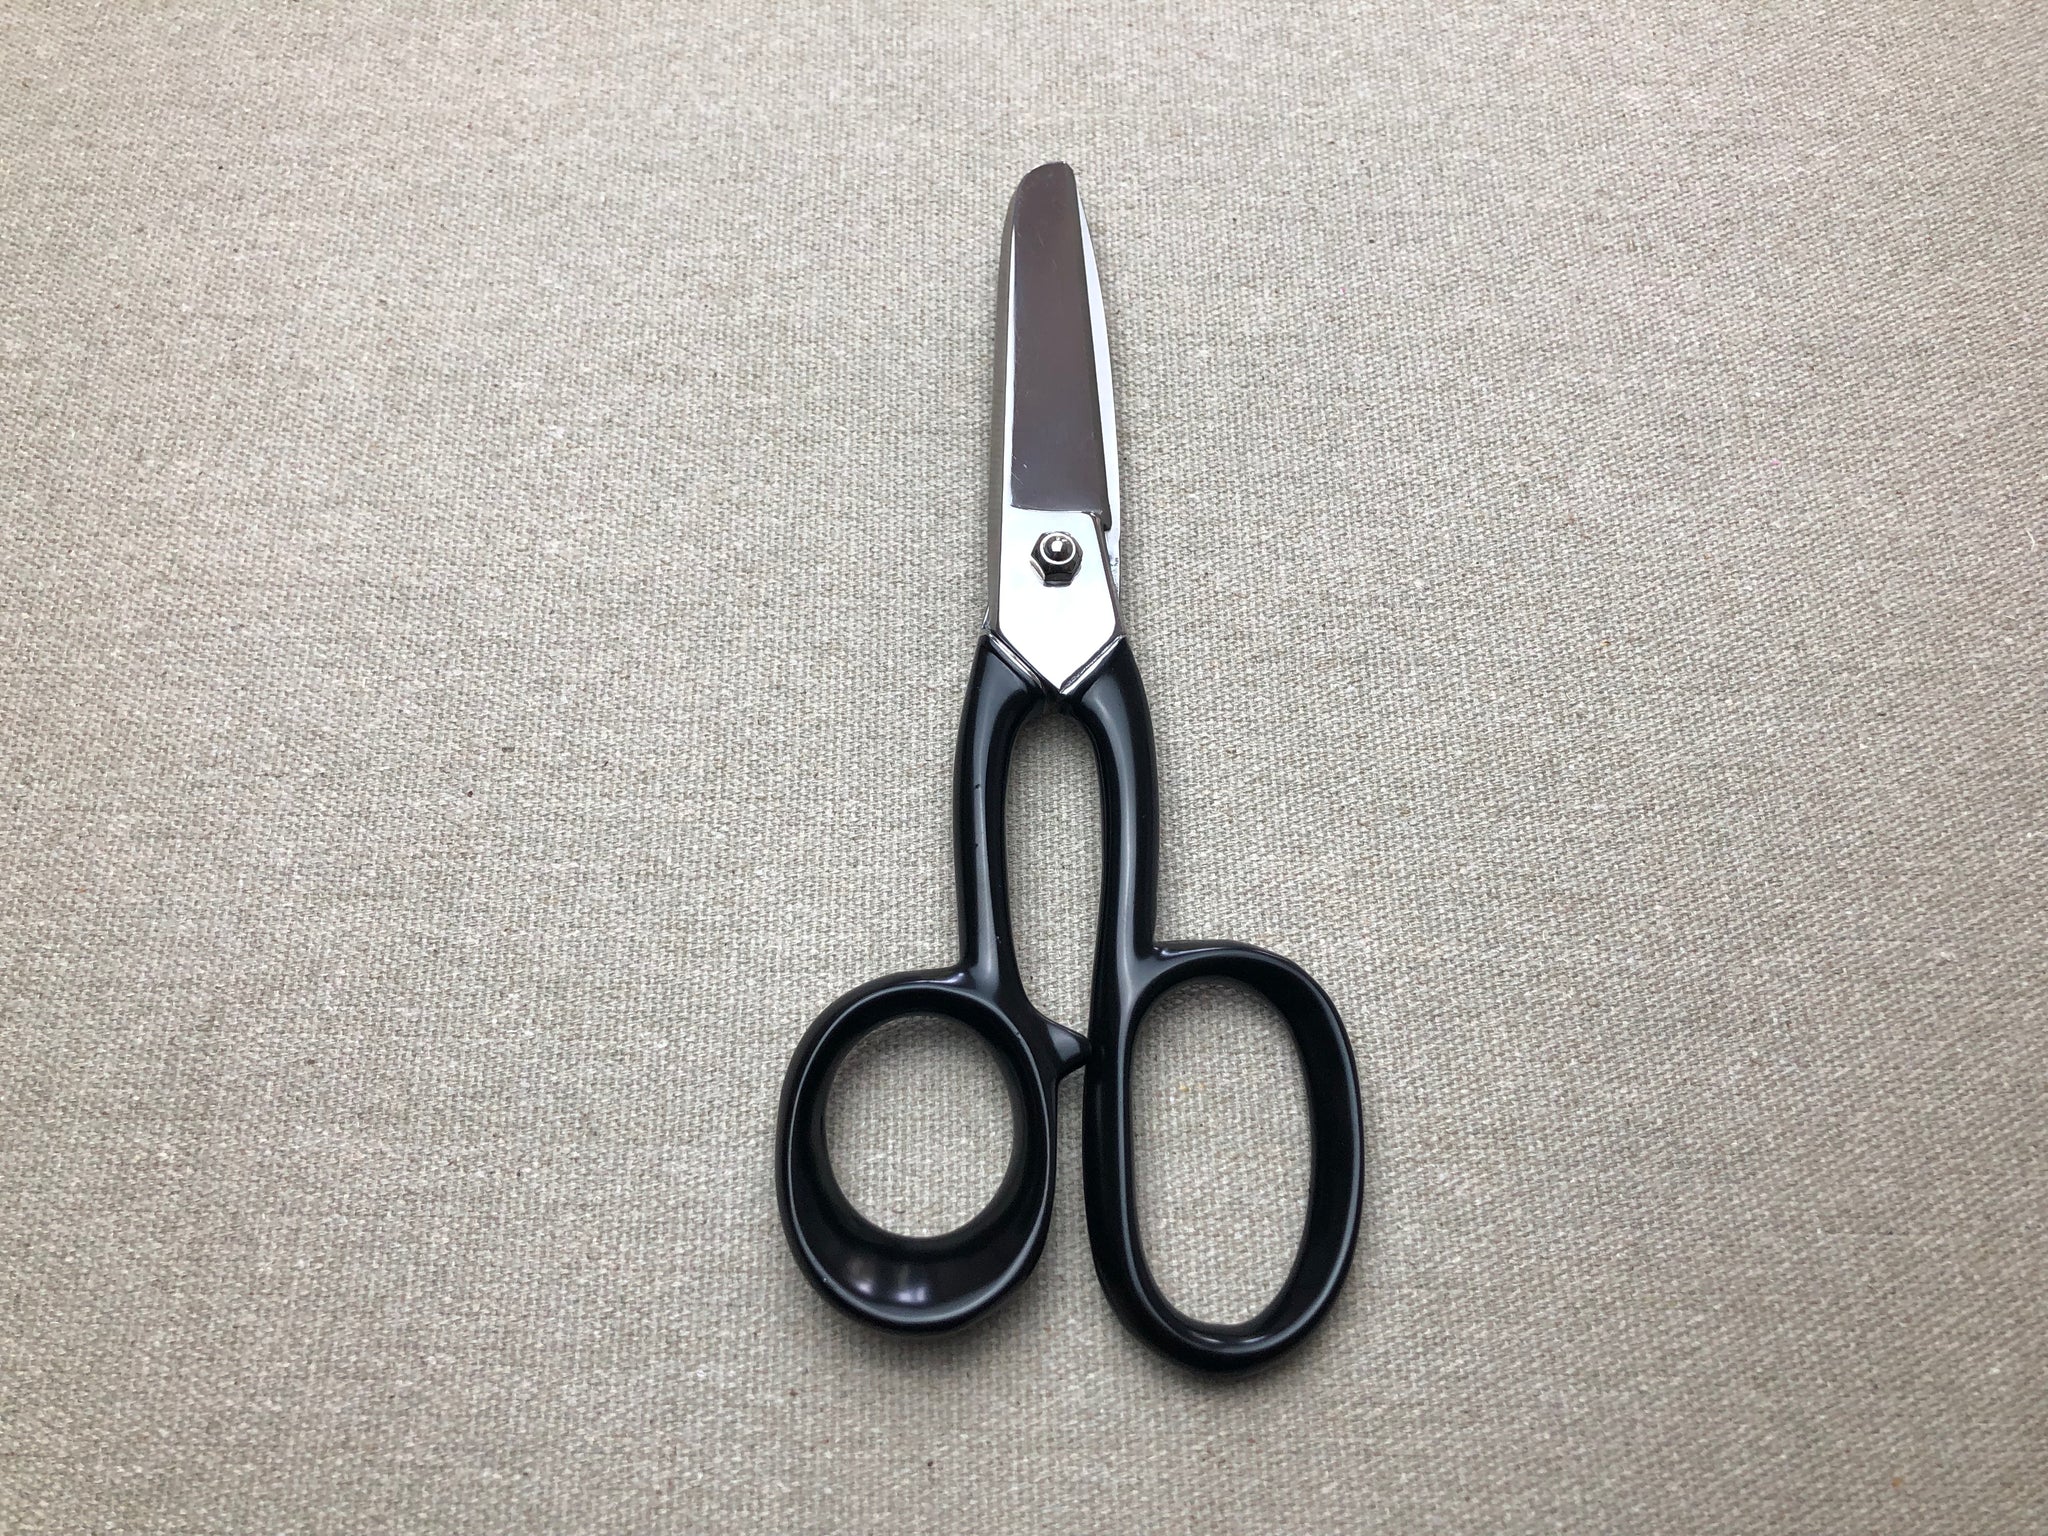 Leather Scissors